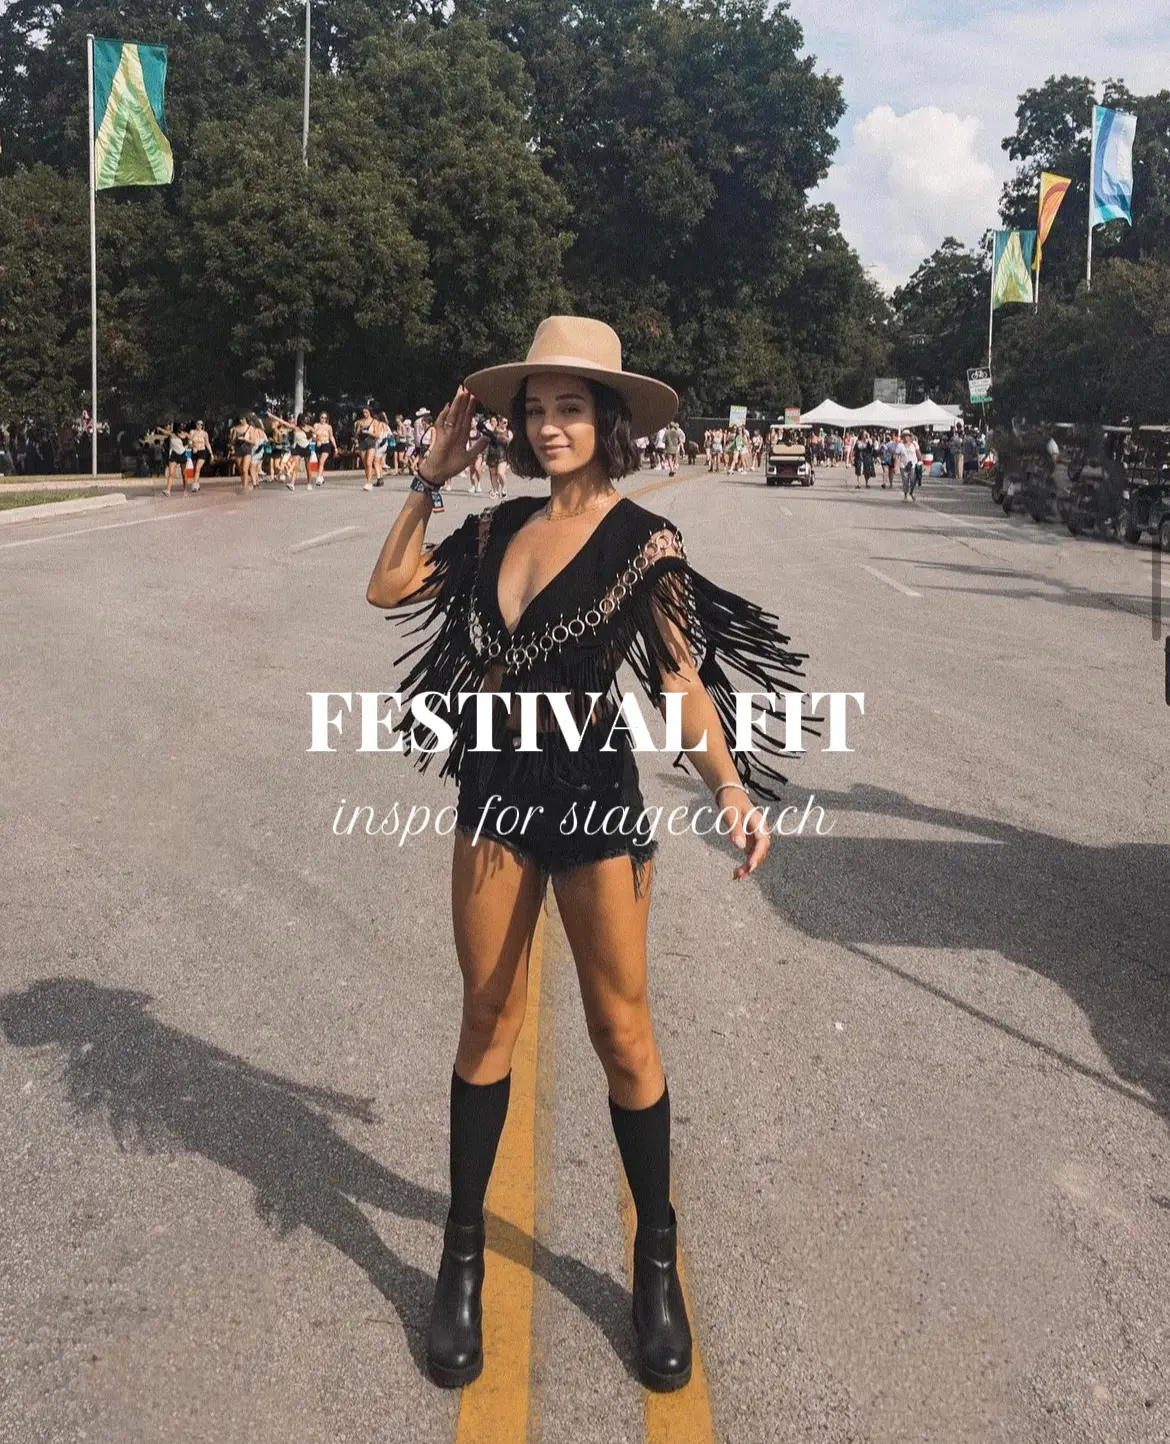 39 Hottest Festival Outfits For Coachella Are Right Here  Festival outfit  coachella, Festival outfits, Festival attire